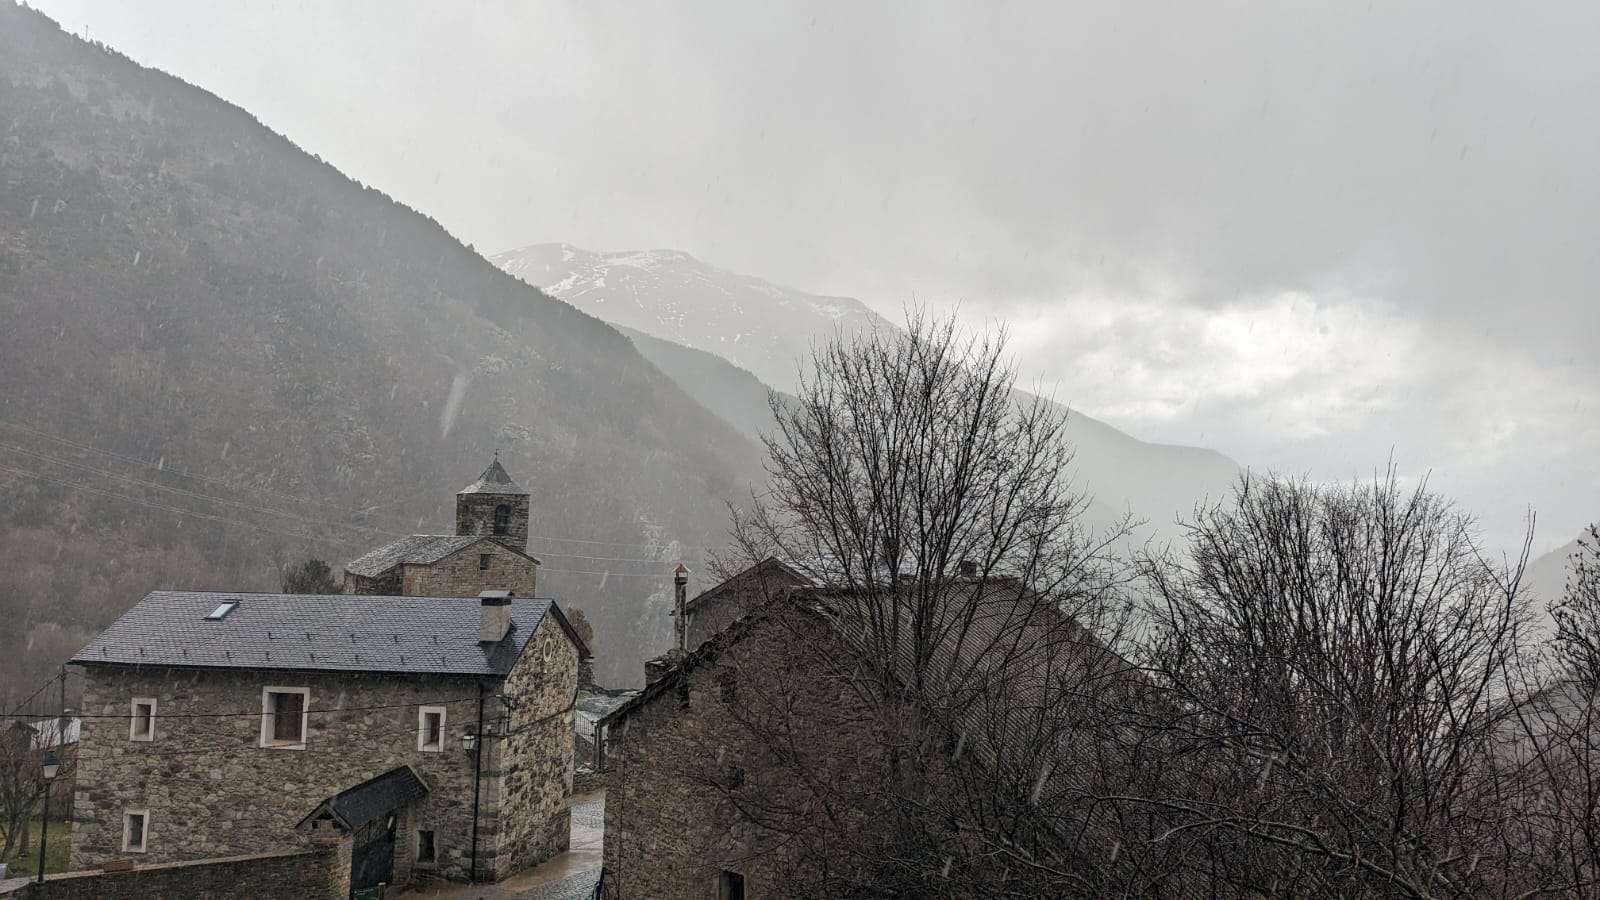 La pluja ja ha arribat aquest dissabte a punts del Pirineu / Albert Pedrola